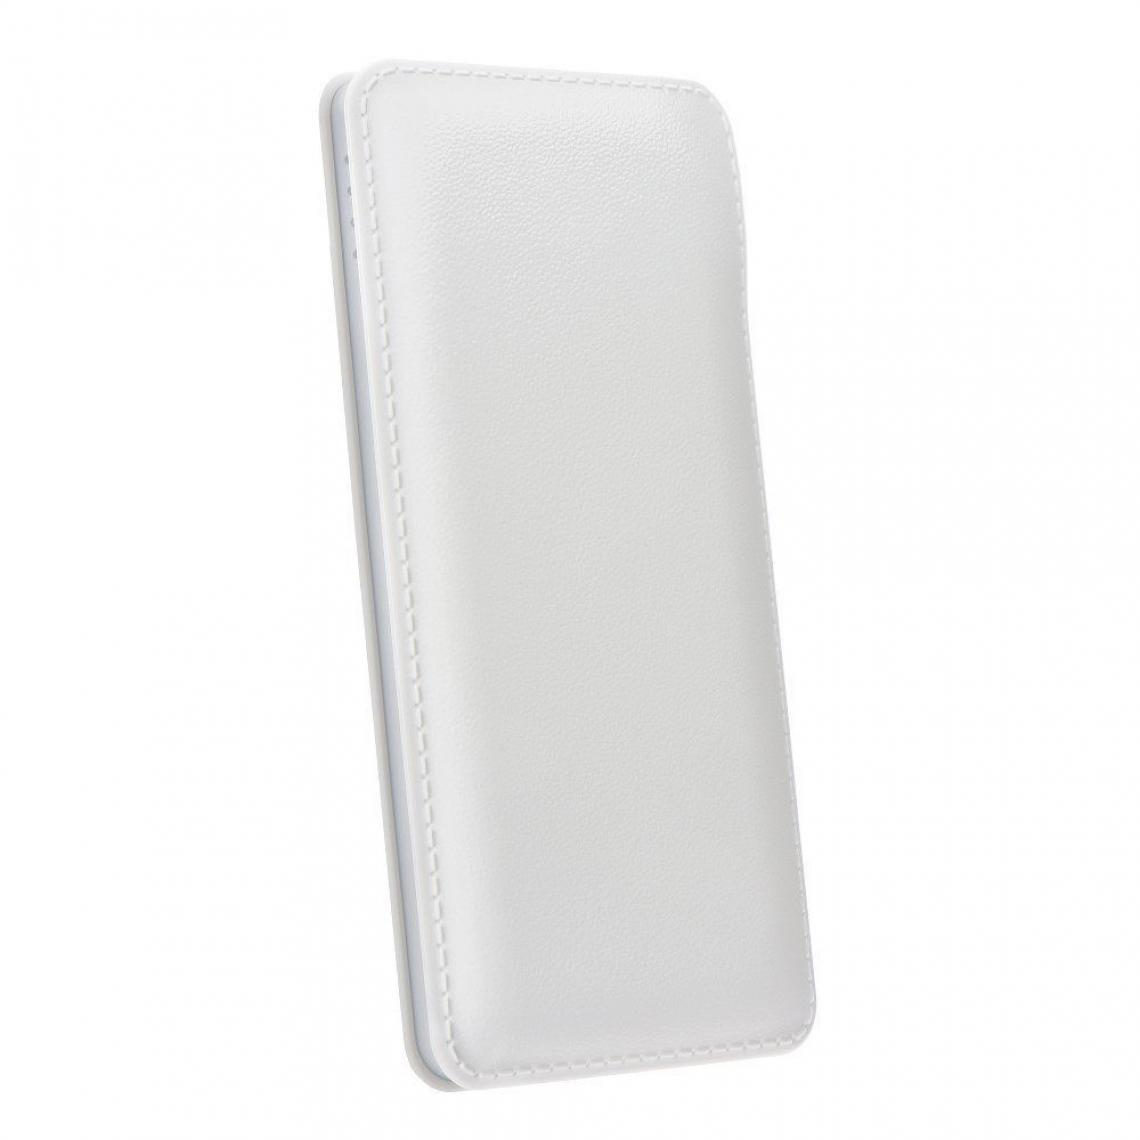 Ozzzo - Chargeur batterie externe 30000 mAh powerbank ozzzo blanc pour Apple iPhone XS Max - Autres accessoires smartphone